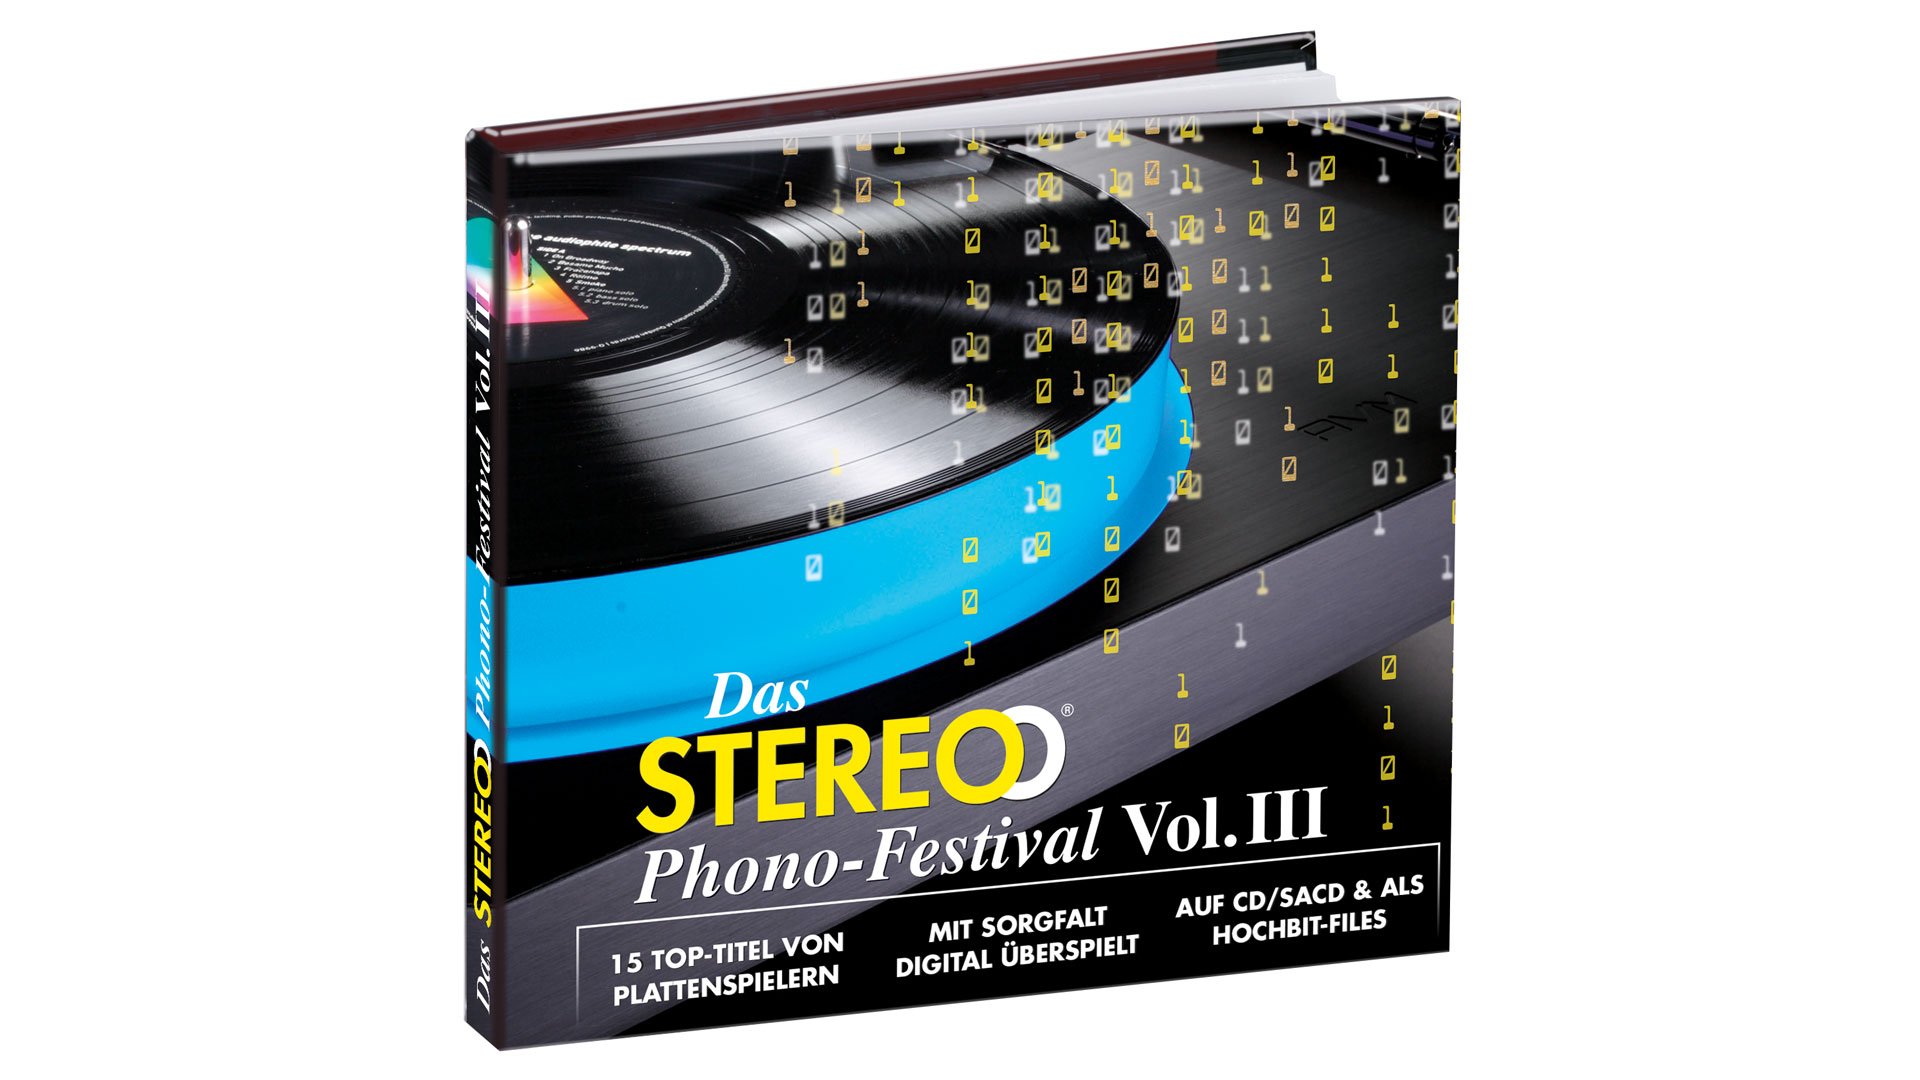 STEREO Phono-Festival Vol.III (Preis: 25 Euro) 